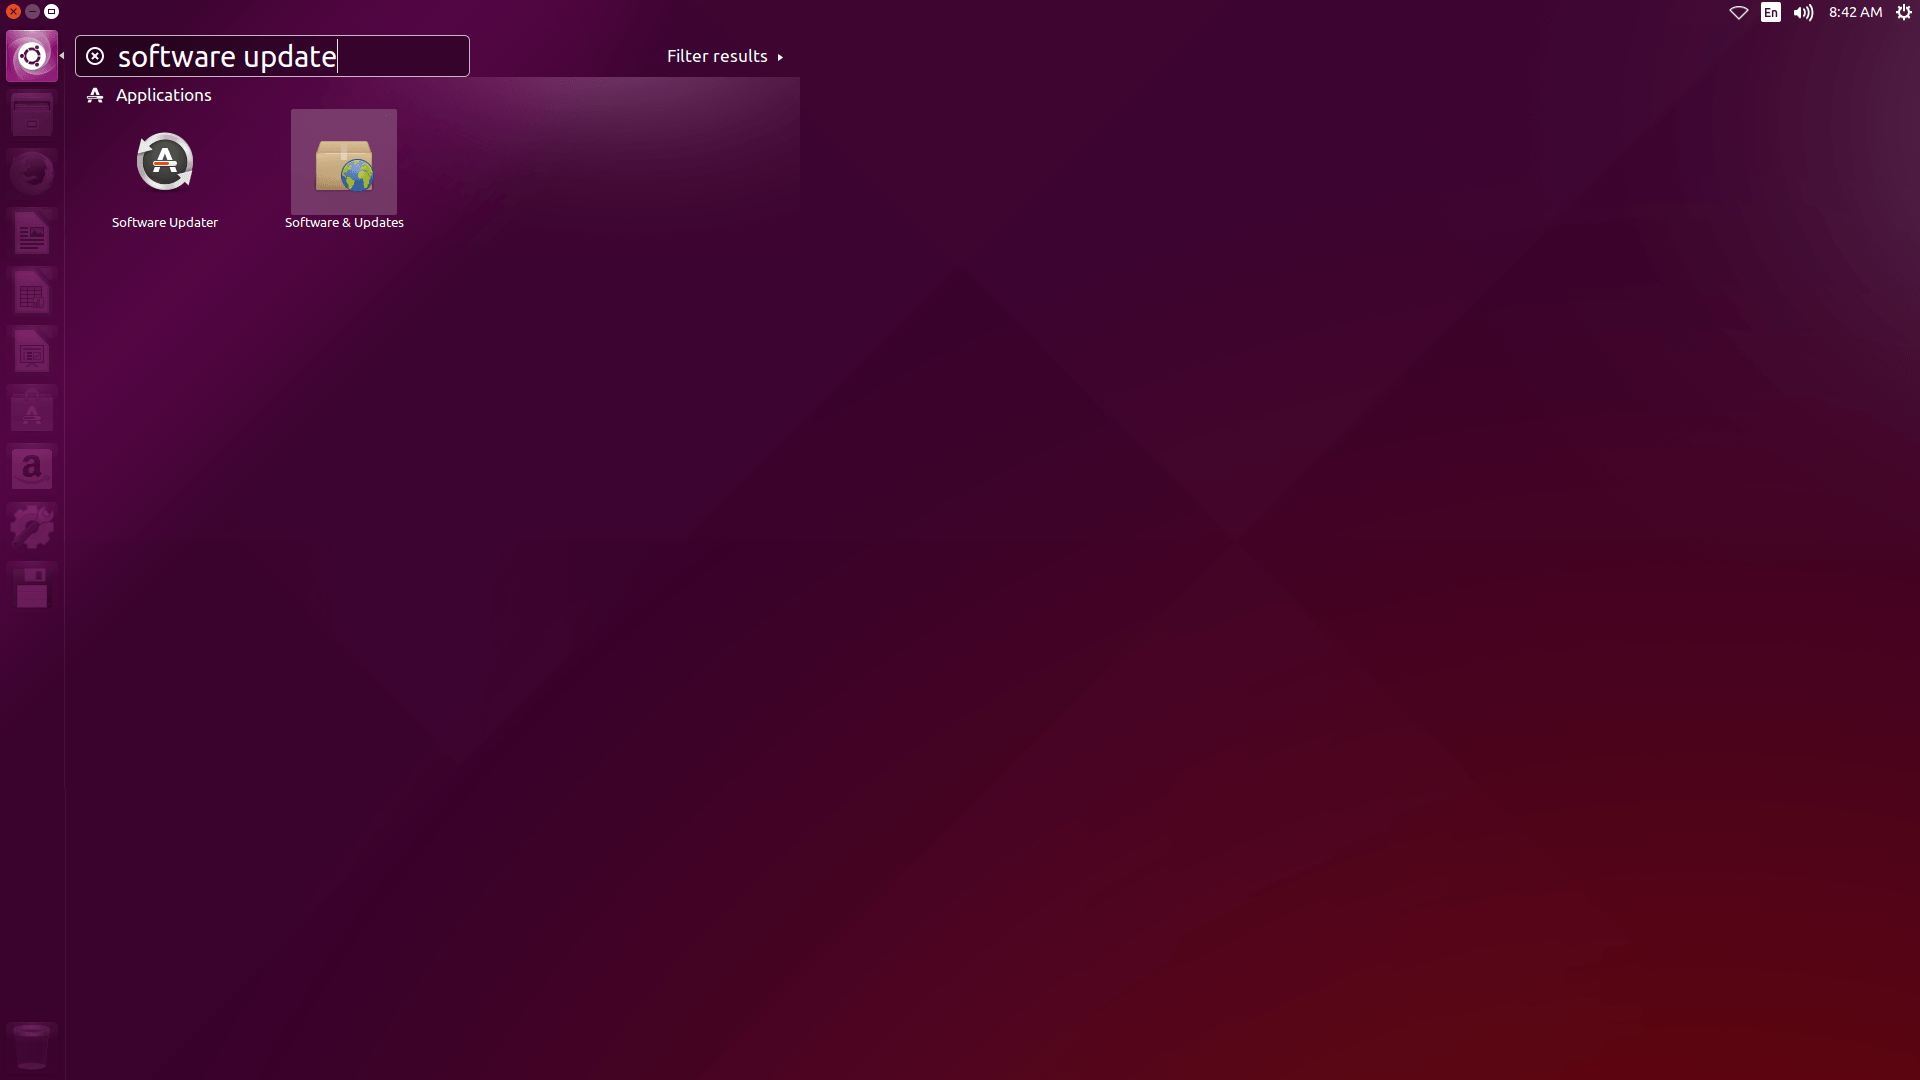 ubuntu download 15.10